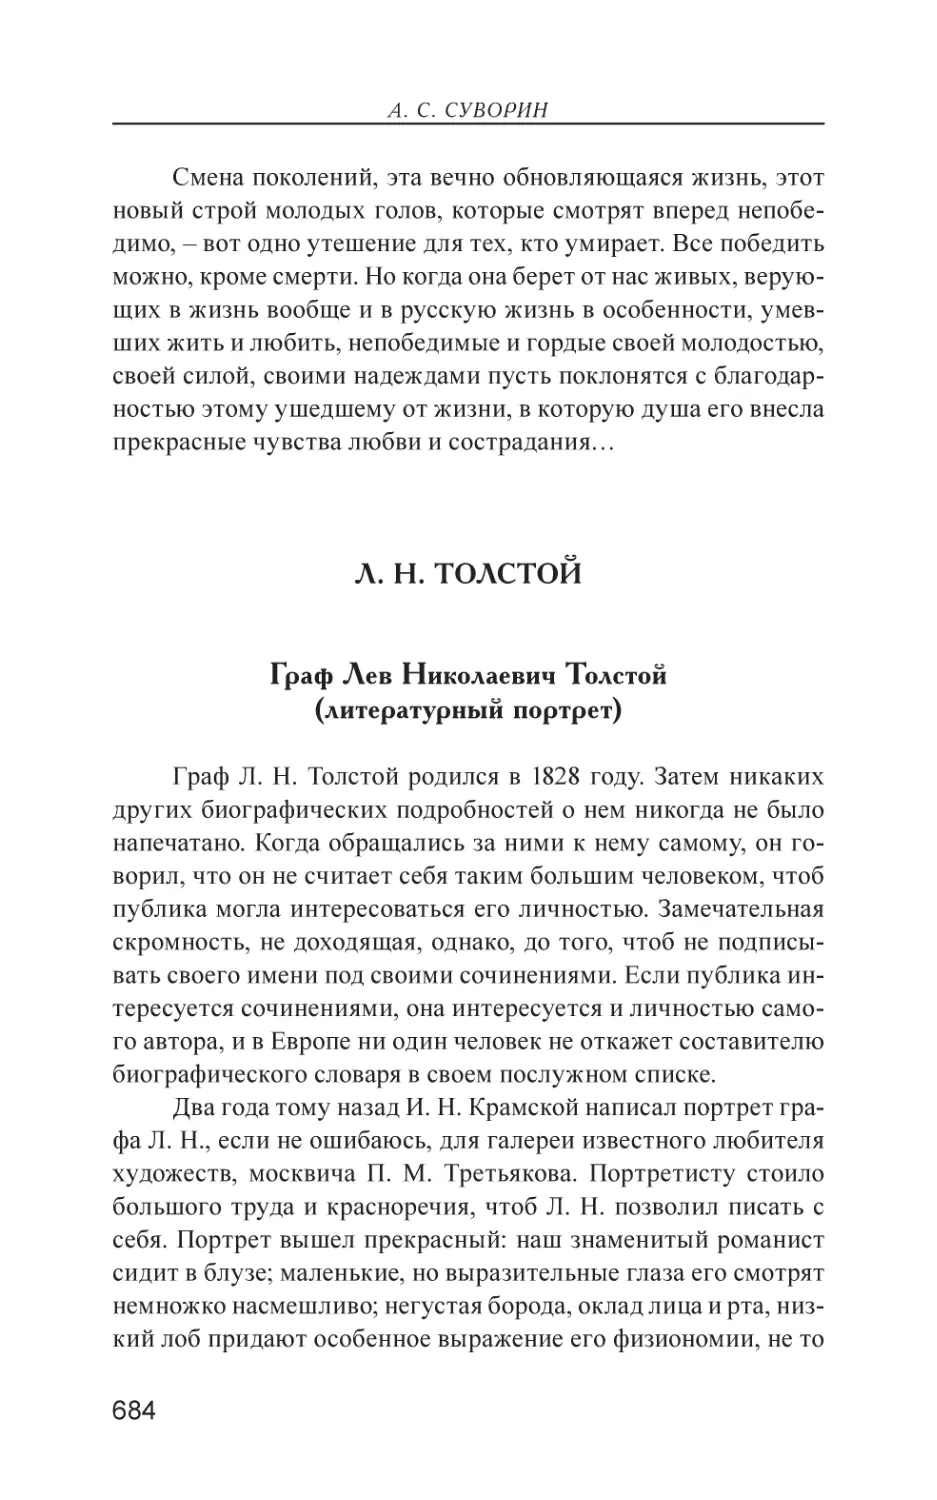 Л. Н. Толстой
Граф Лев Николаевич Толстой (литературный портрет)